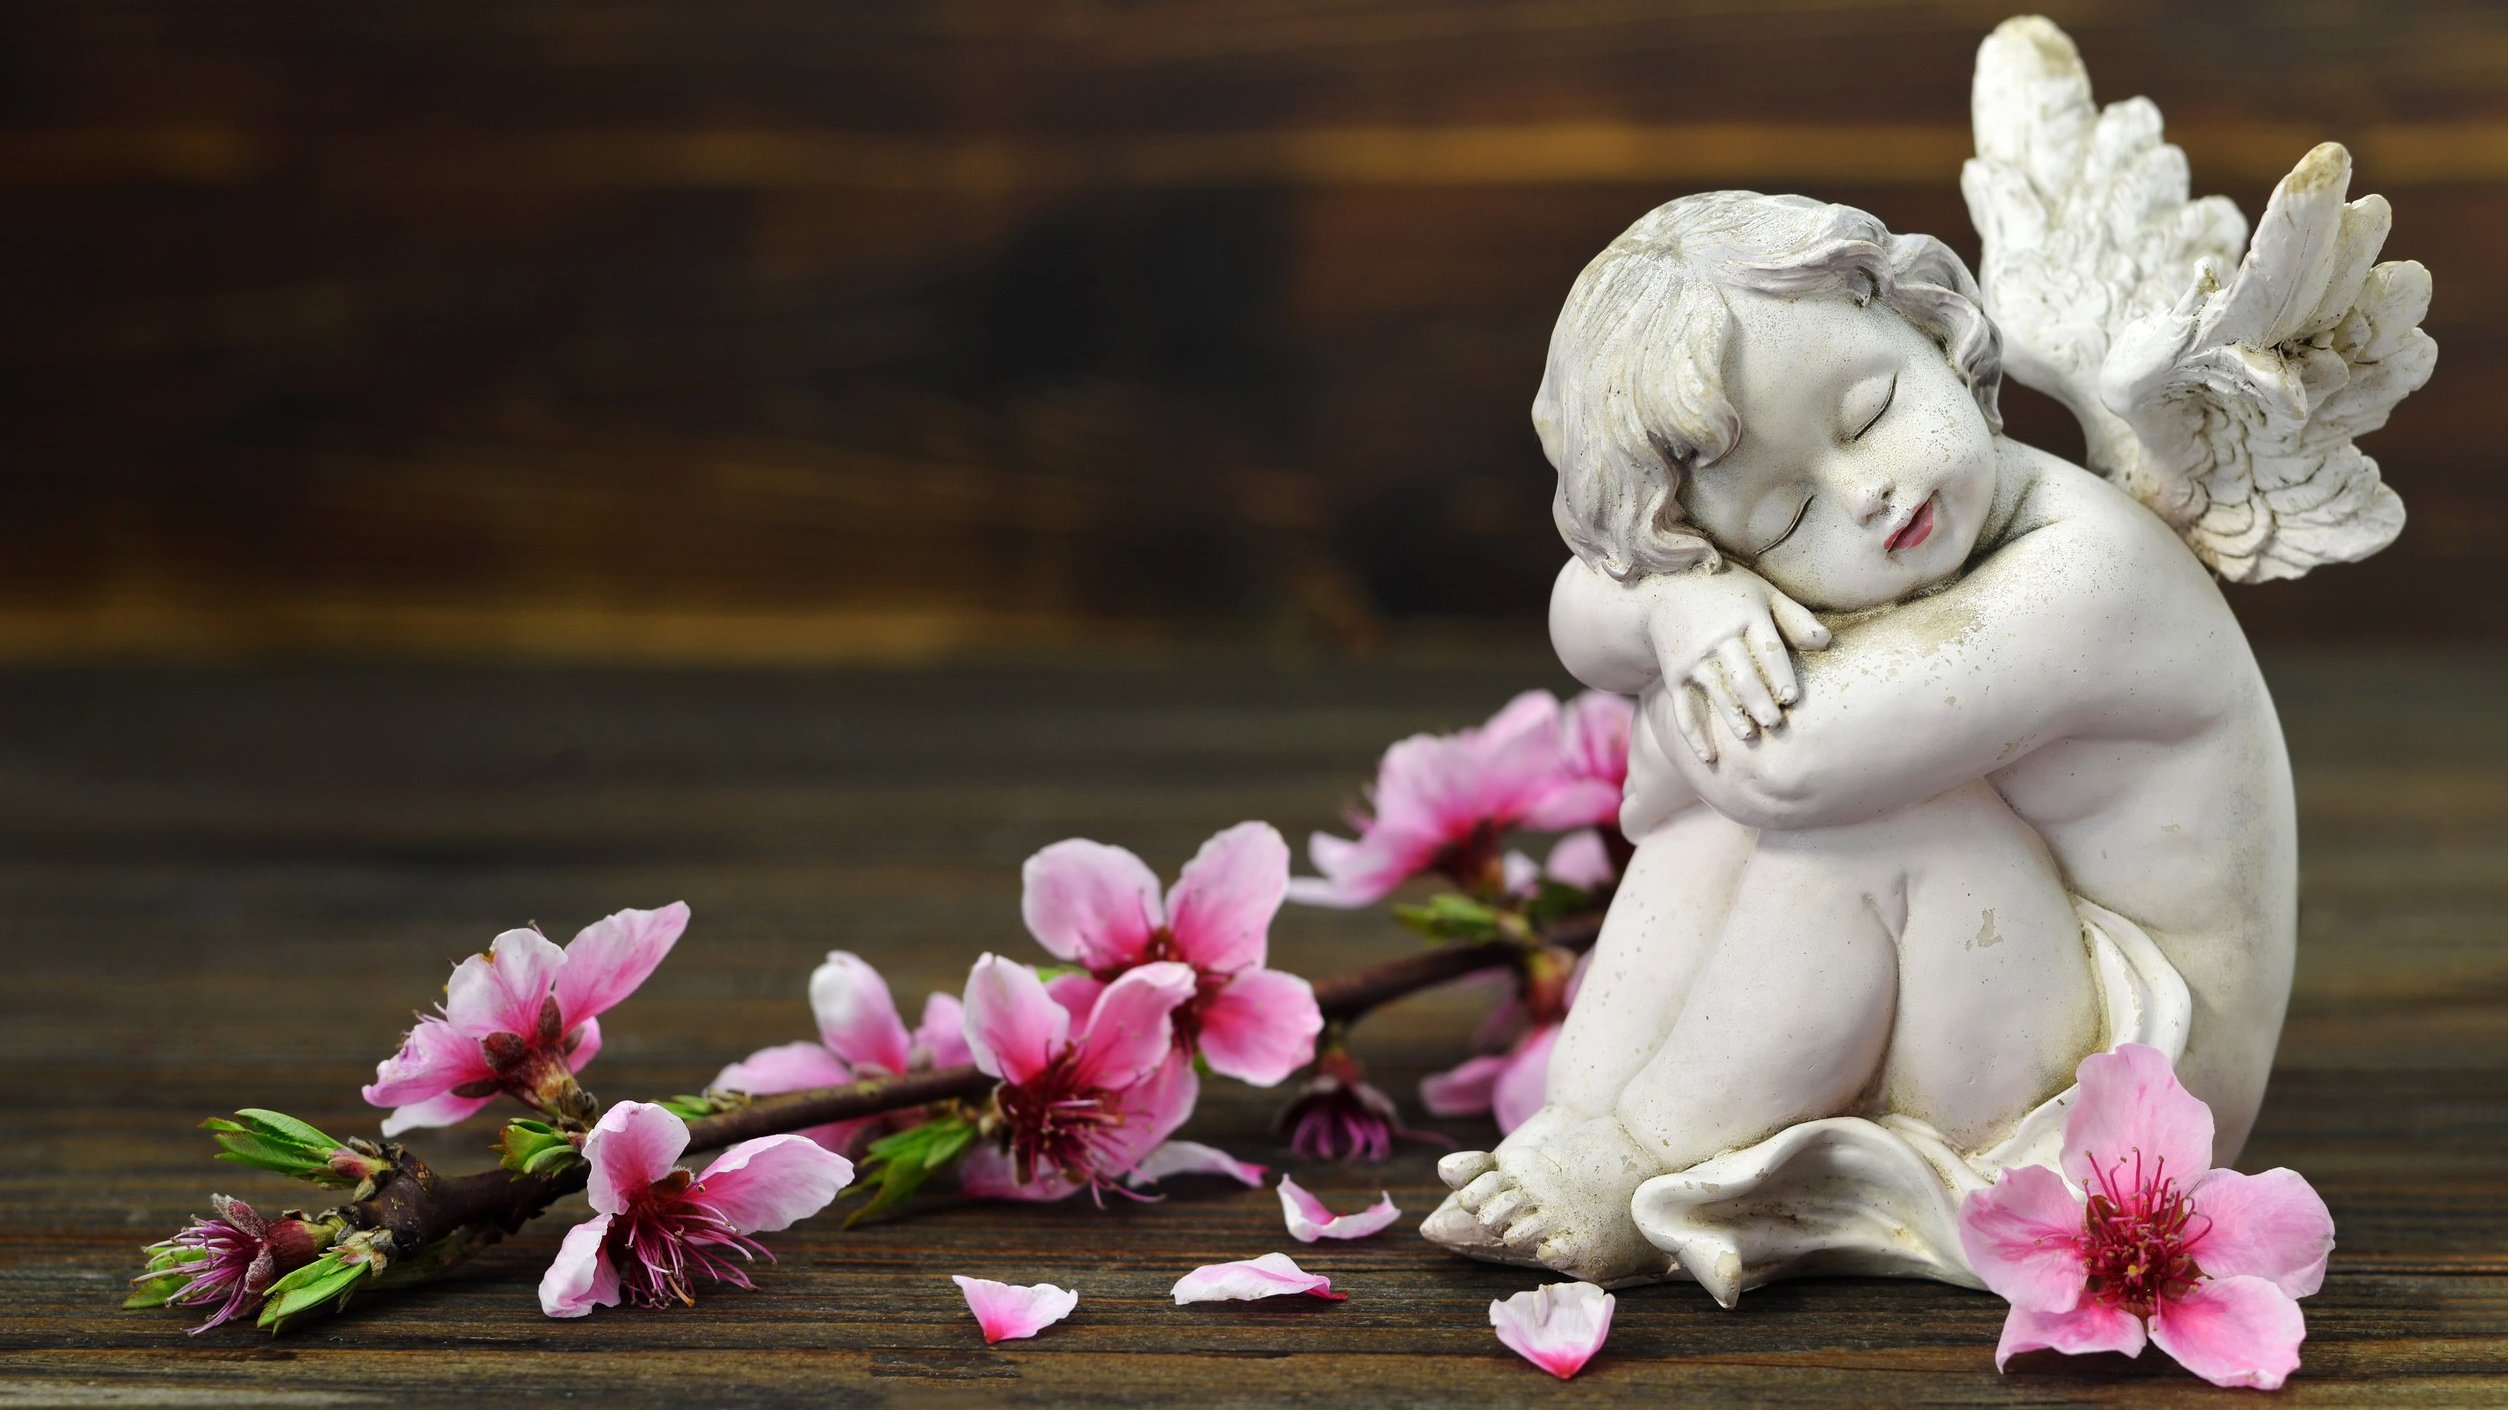 Estátua de um anjo sentada em volta de flores